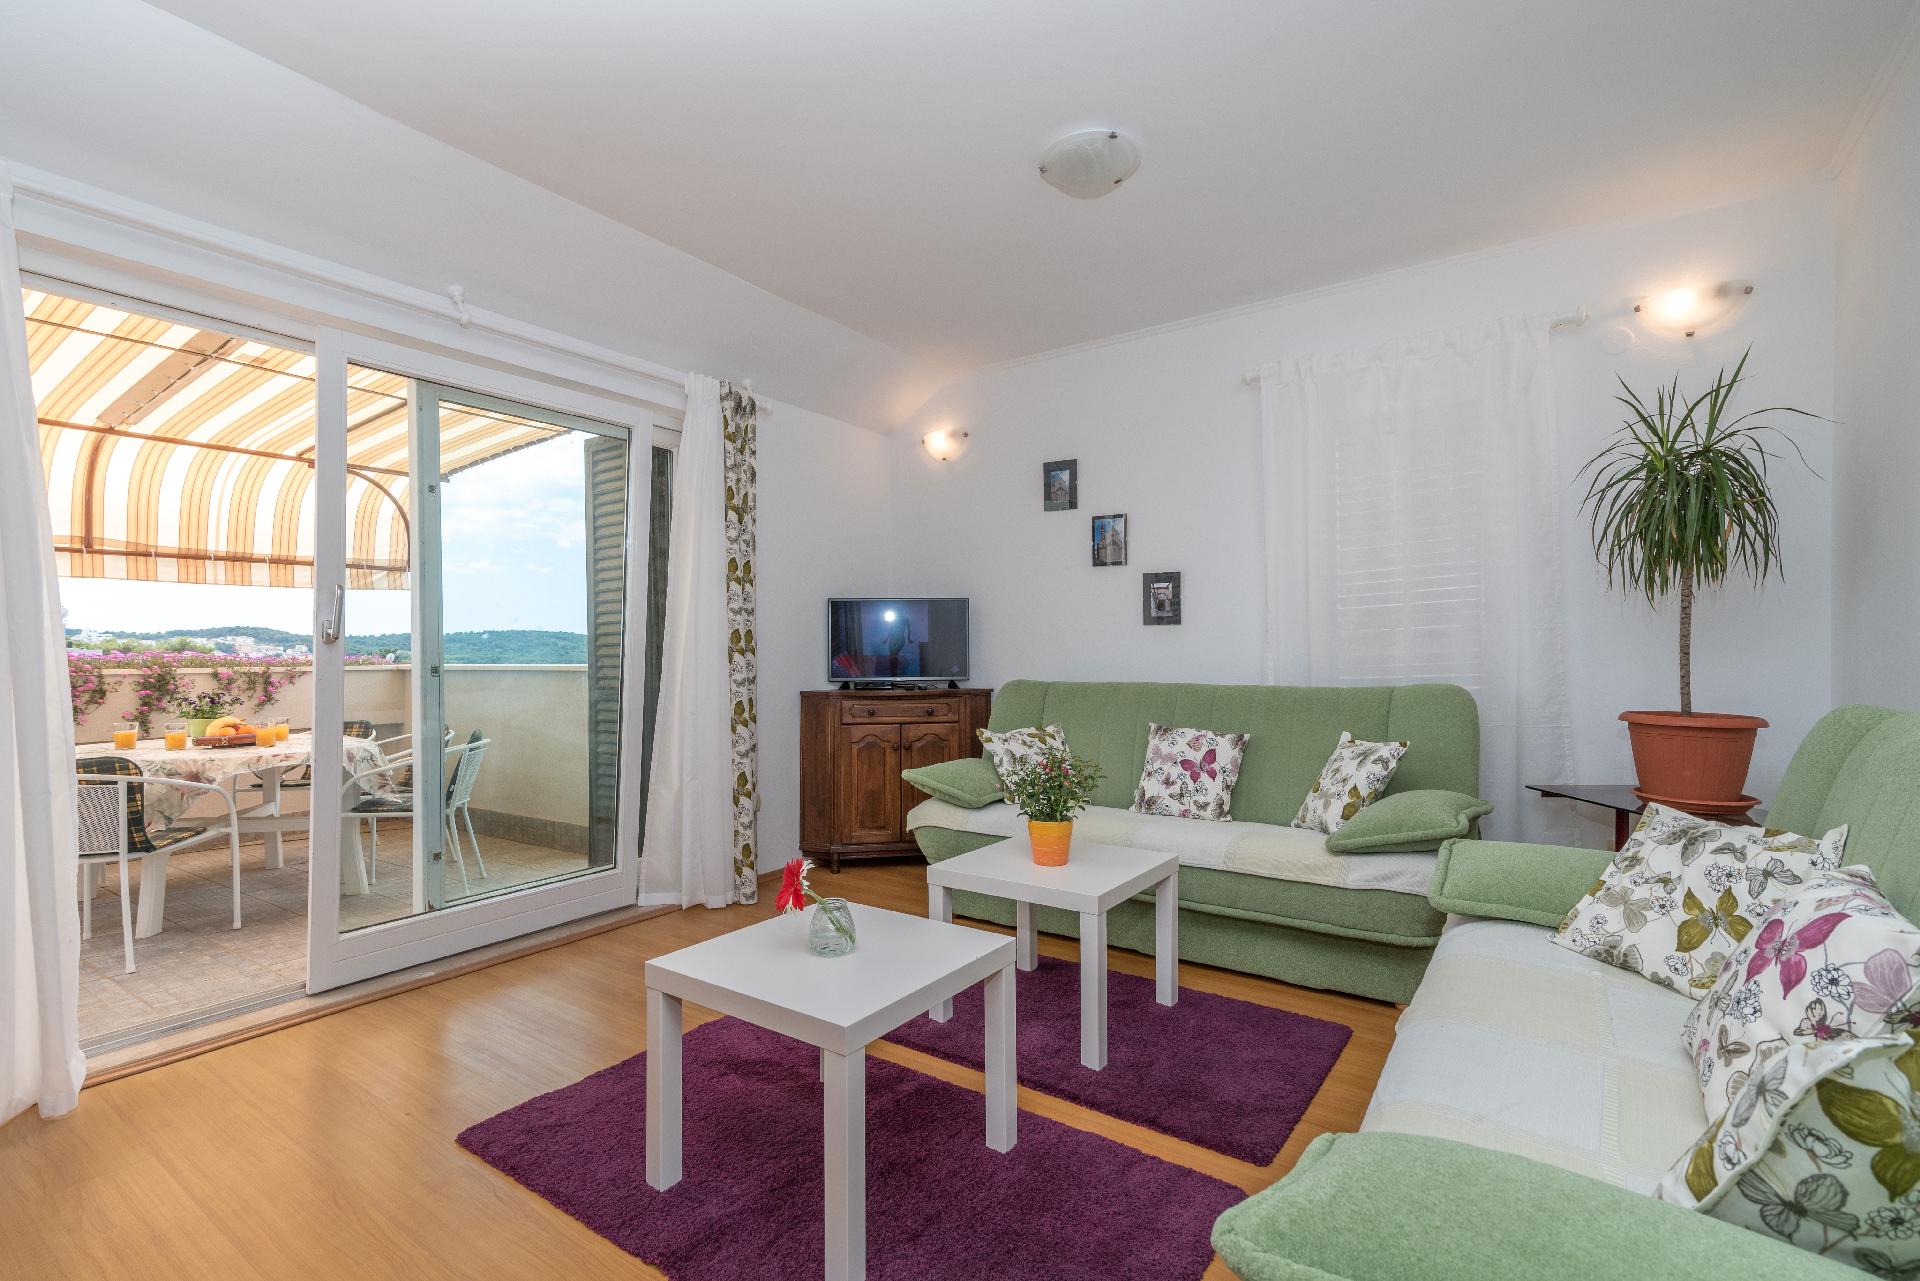 Ferienwohnung für 8 Personen ca. 135 m²  Ferienwohnung in Dalmatien